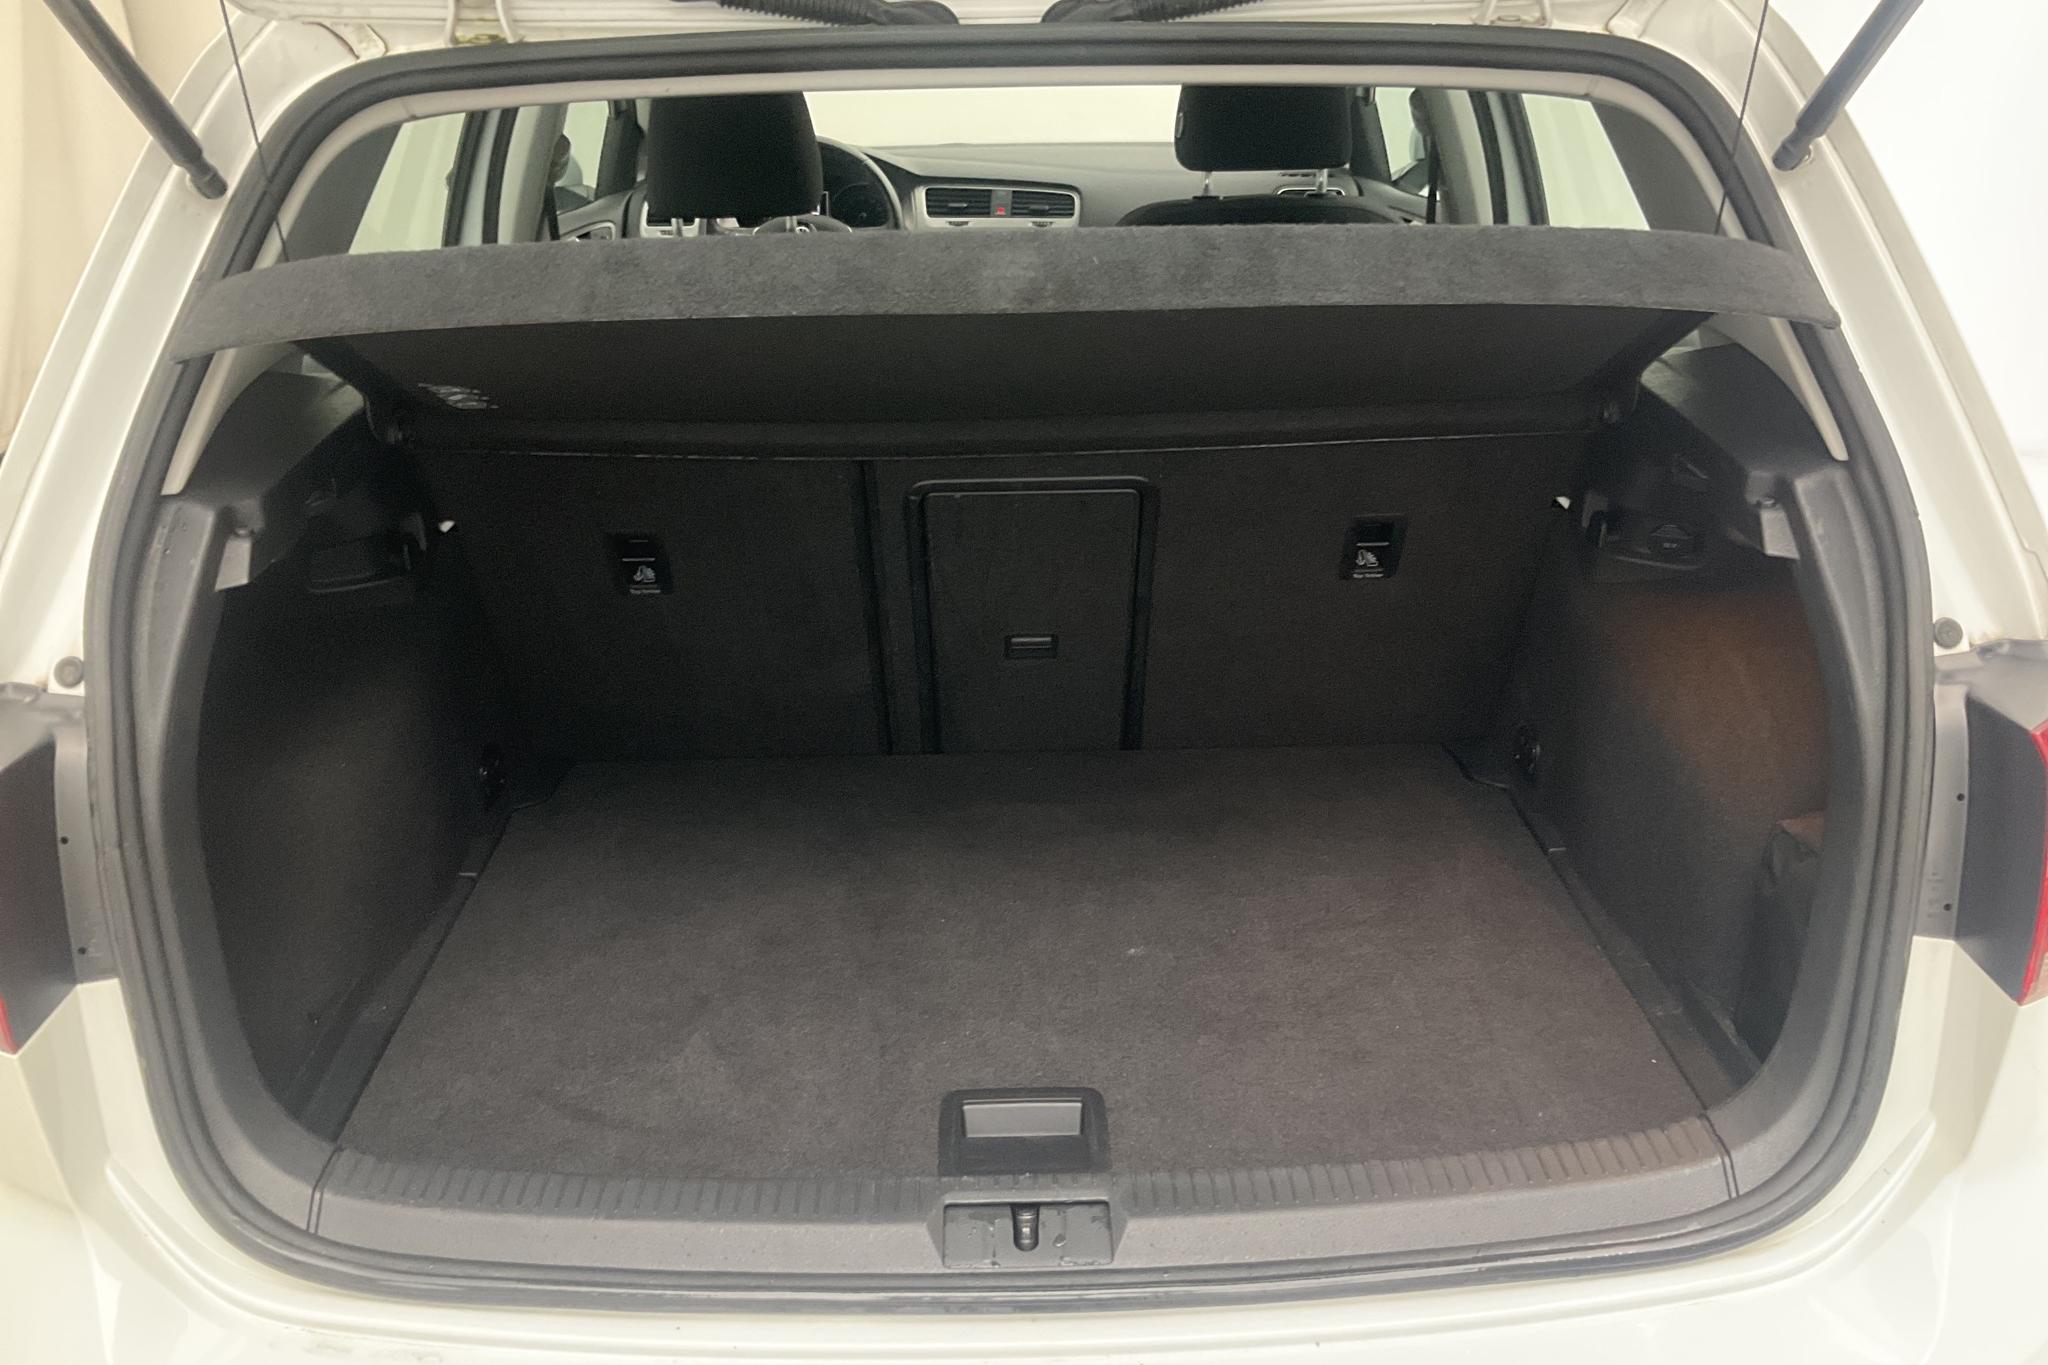 VW Golf VII 1.4 TGI 5dr (110hk) - 39 490 km - Automatic - white - 2017